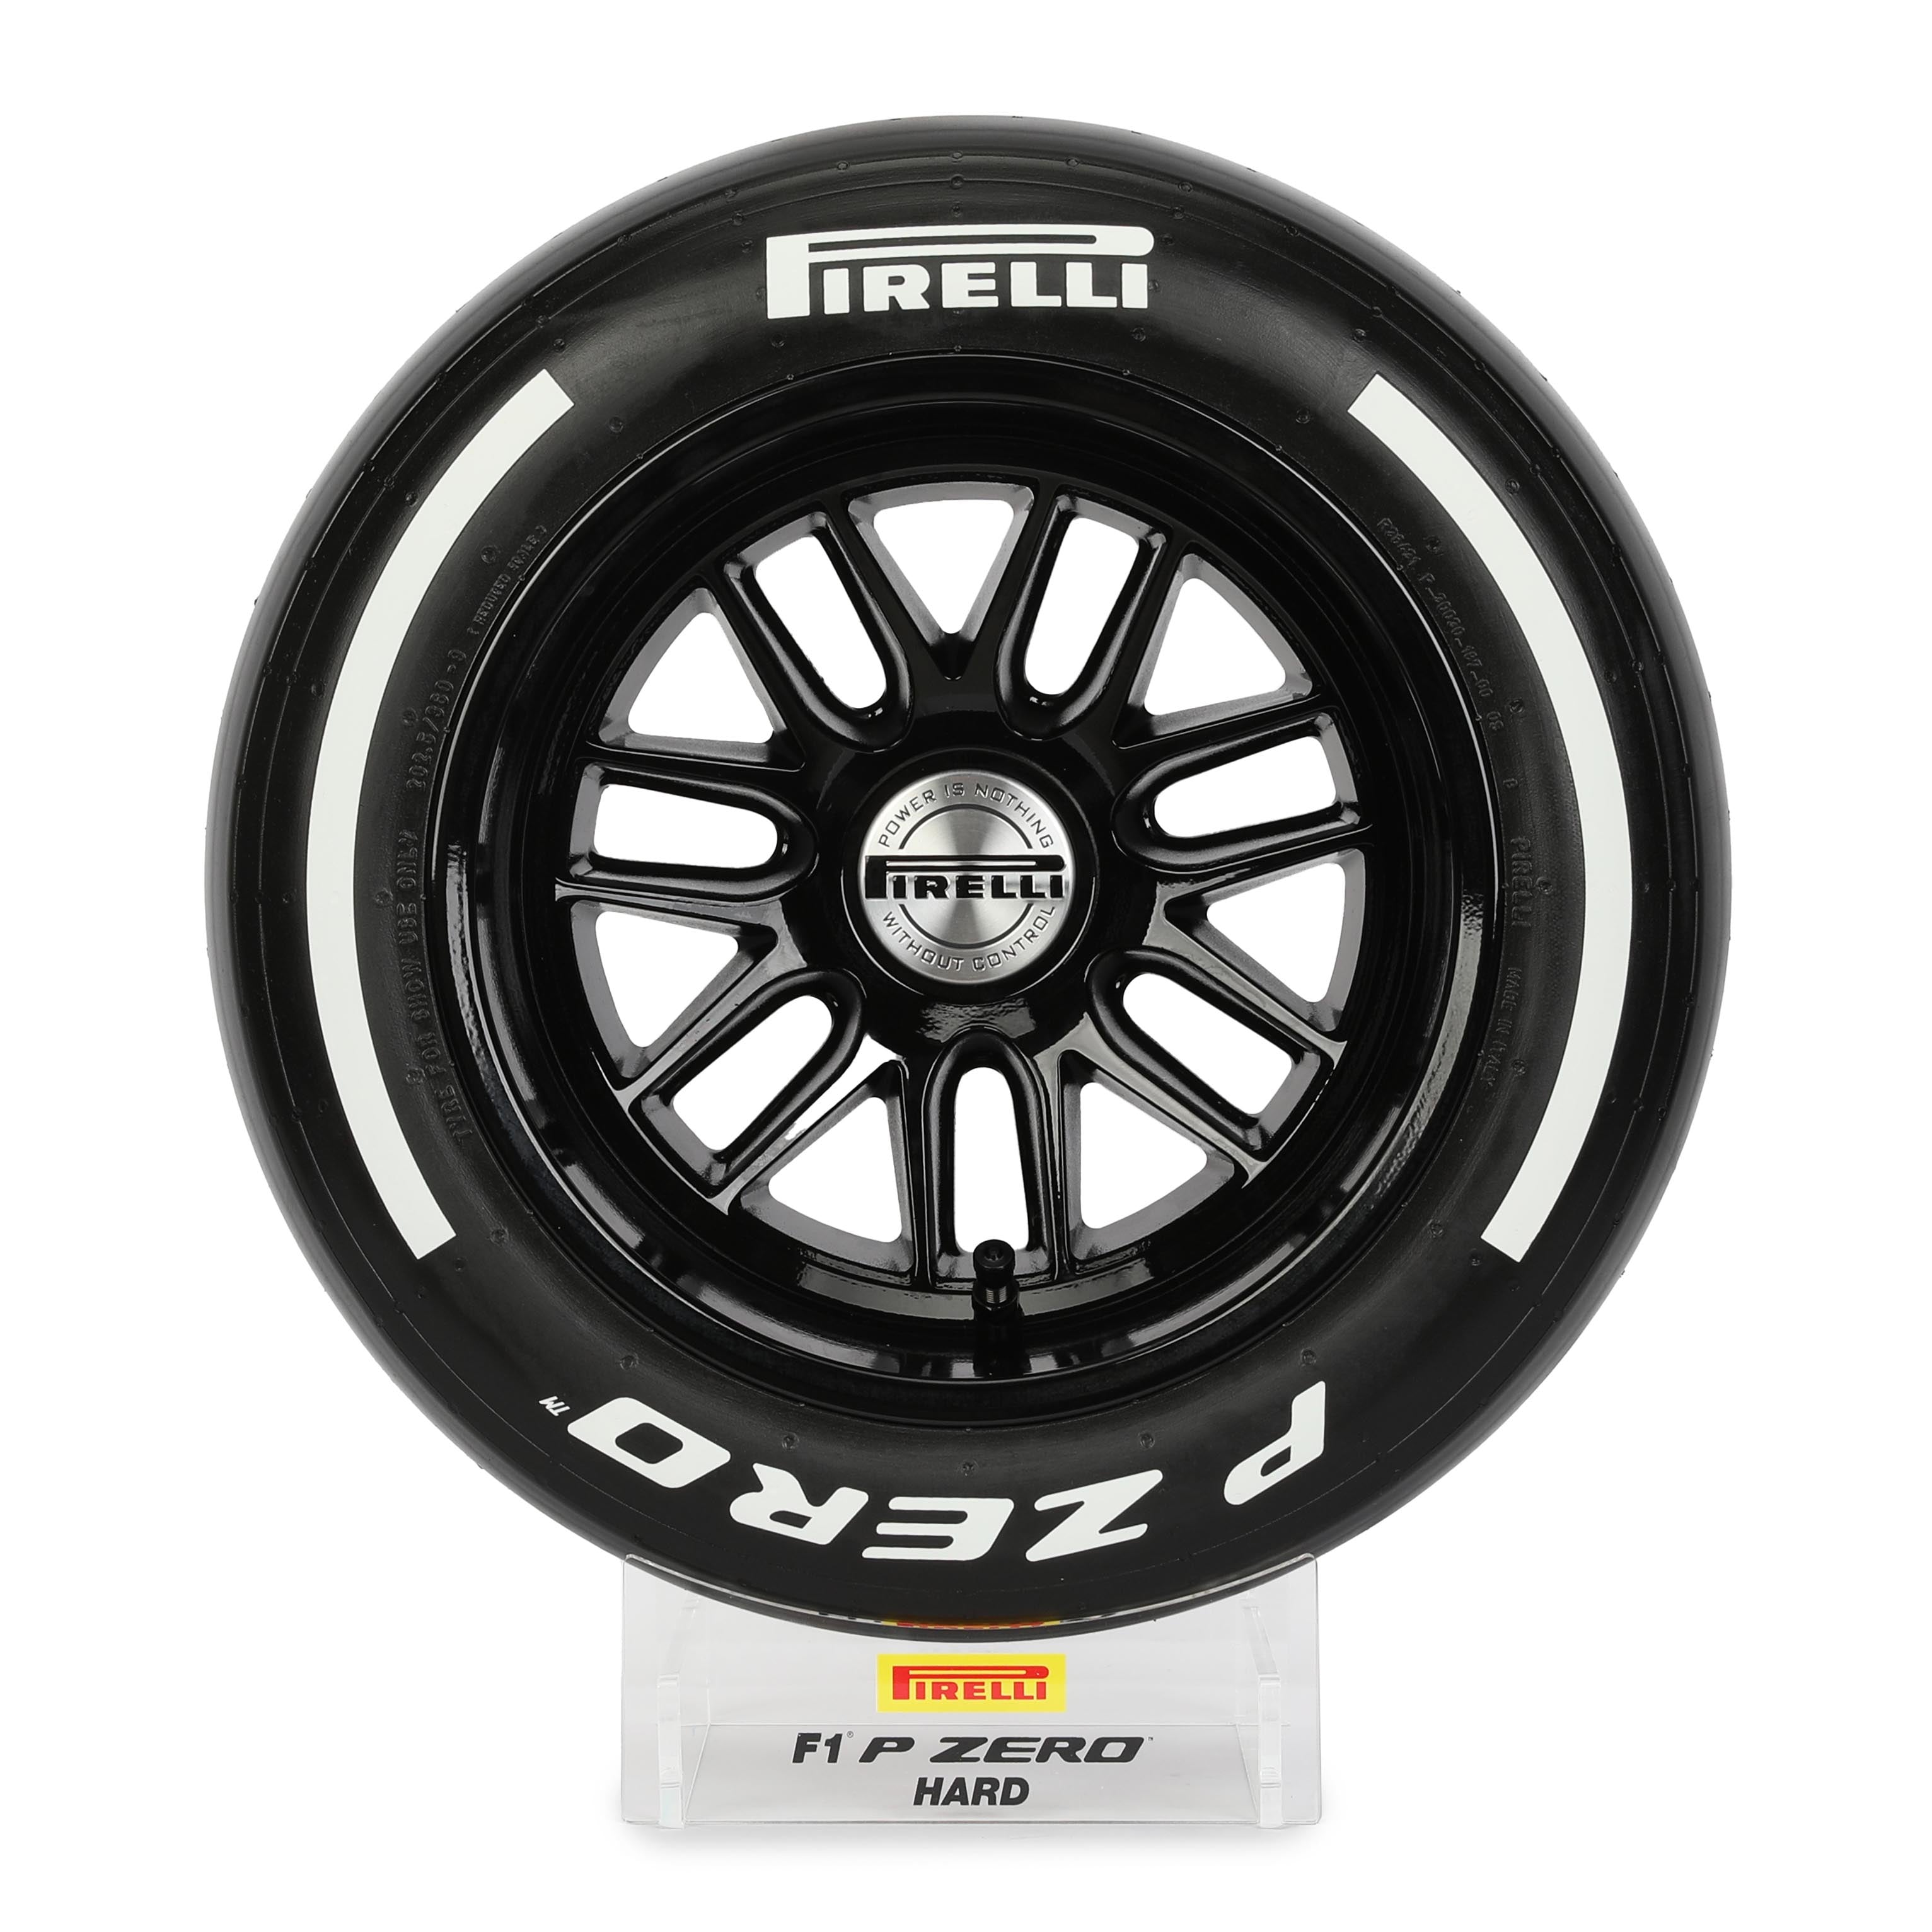 Pirelli Wind Tunnel Tyre - White Hard Compound